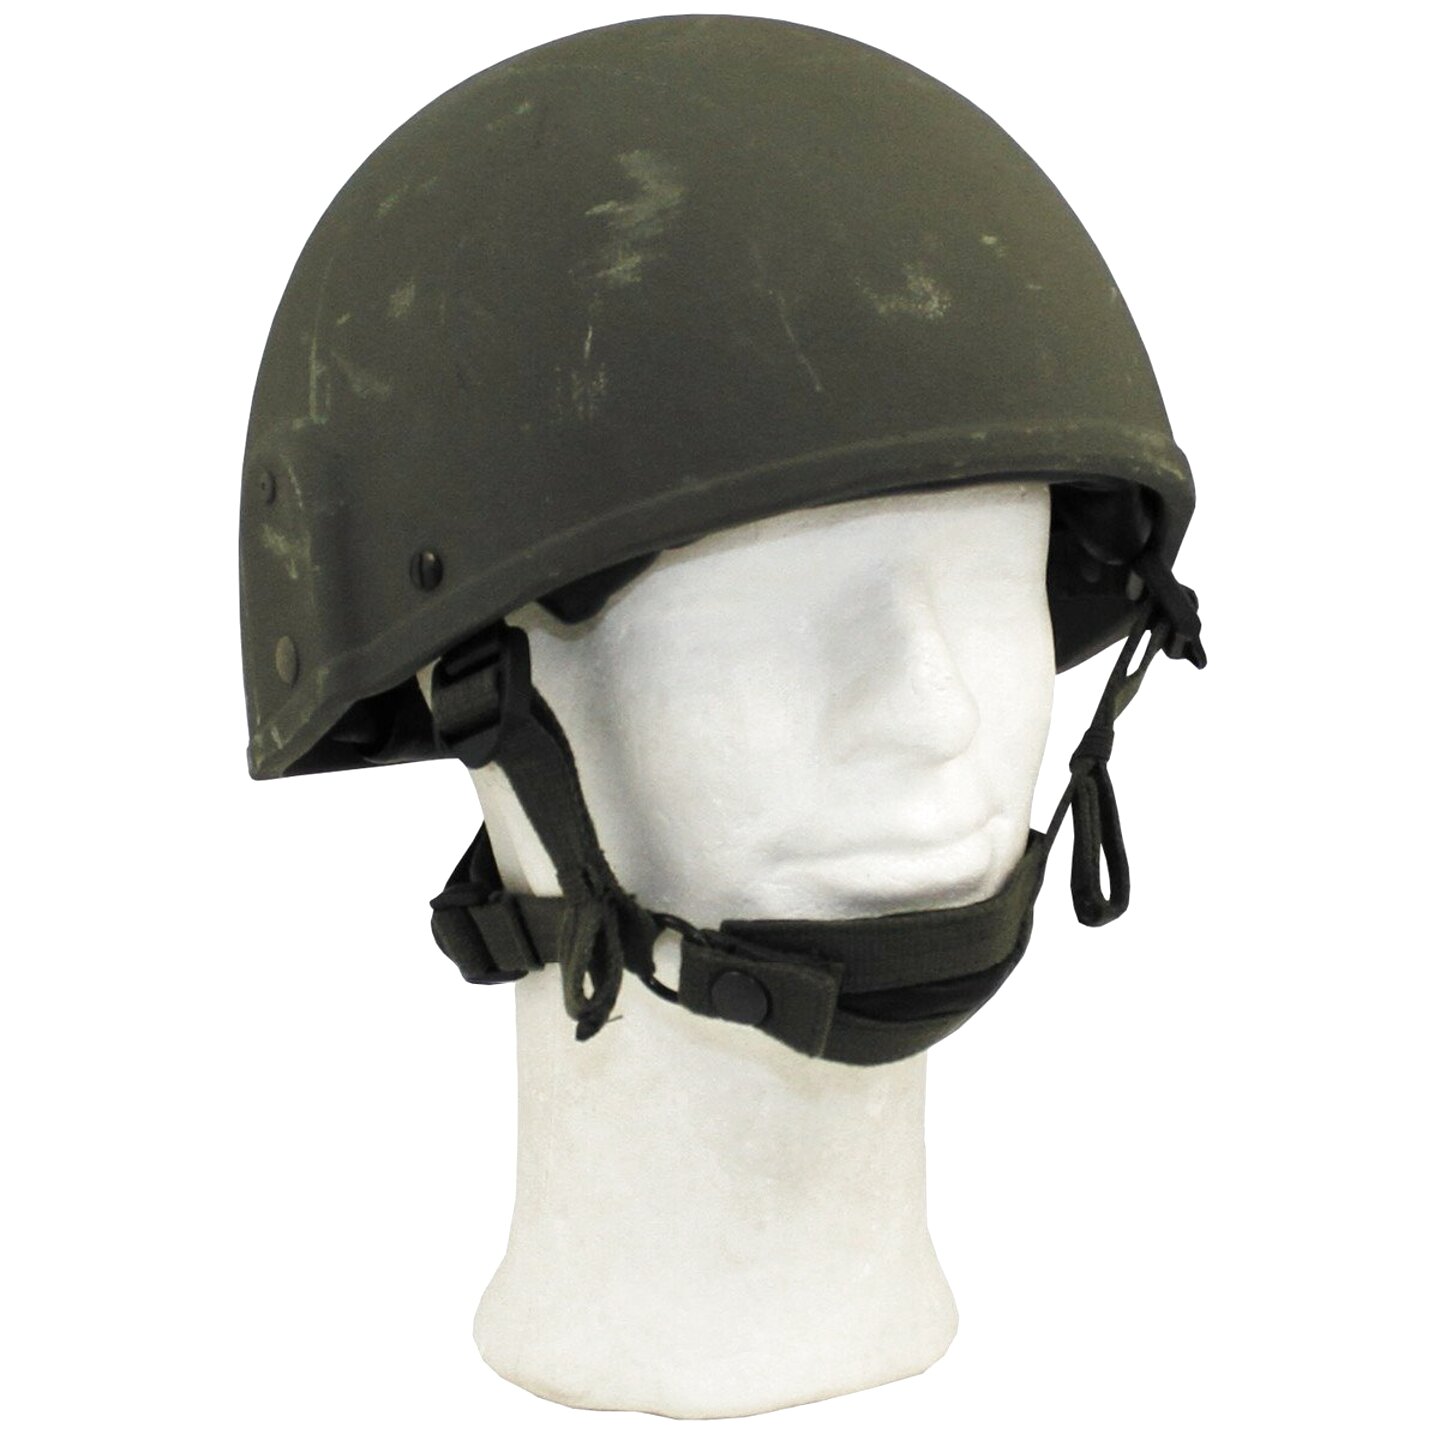 Mk6 Helmet for sale in UK | 57 used Mk6 Helmets